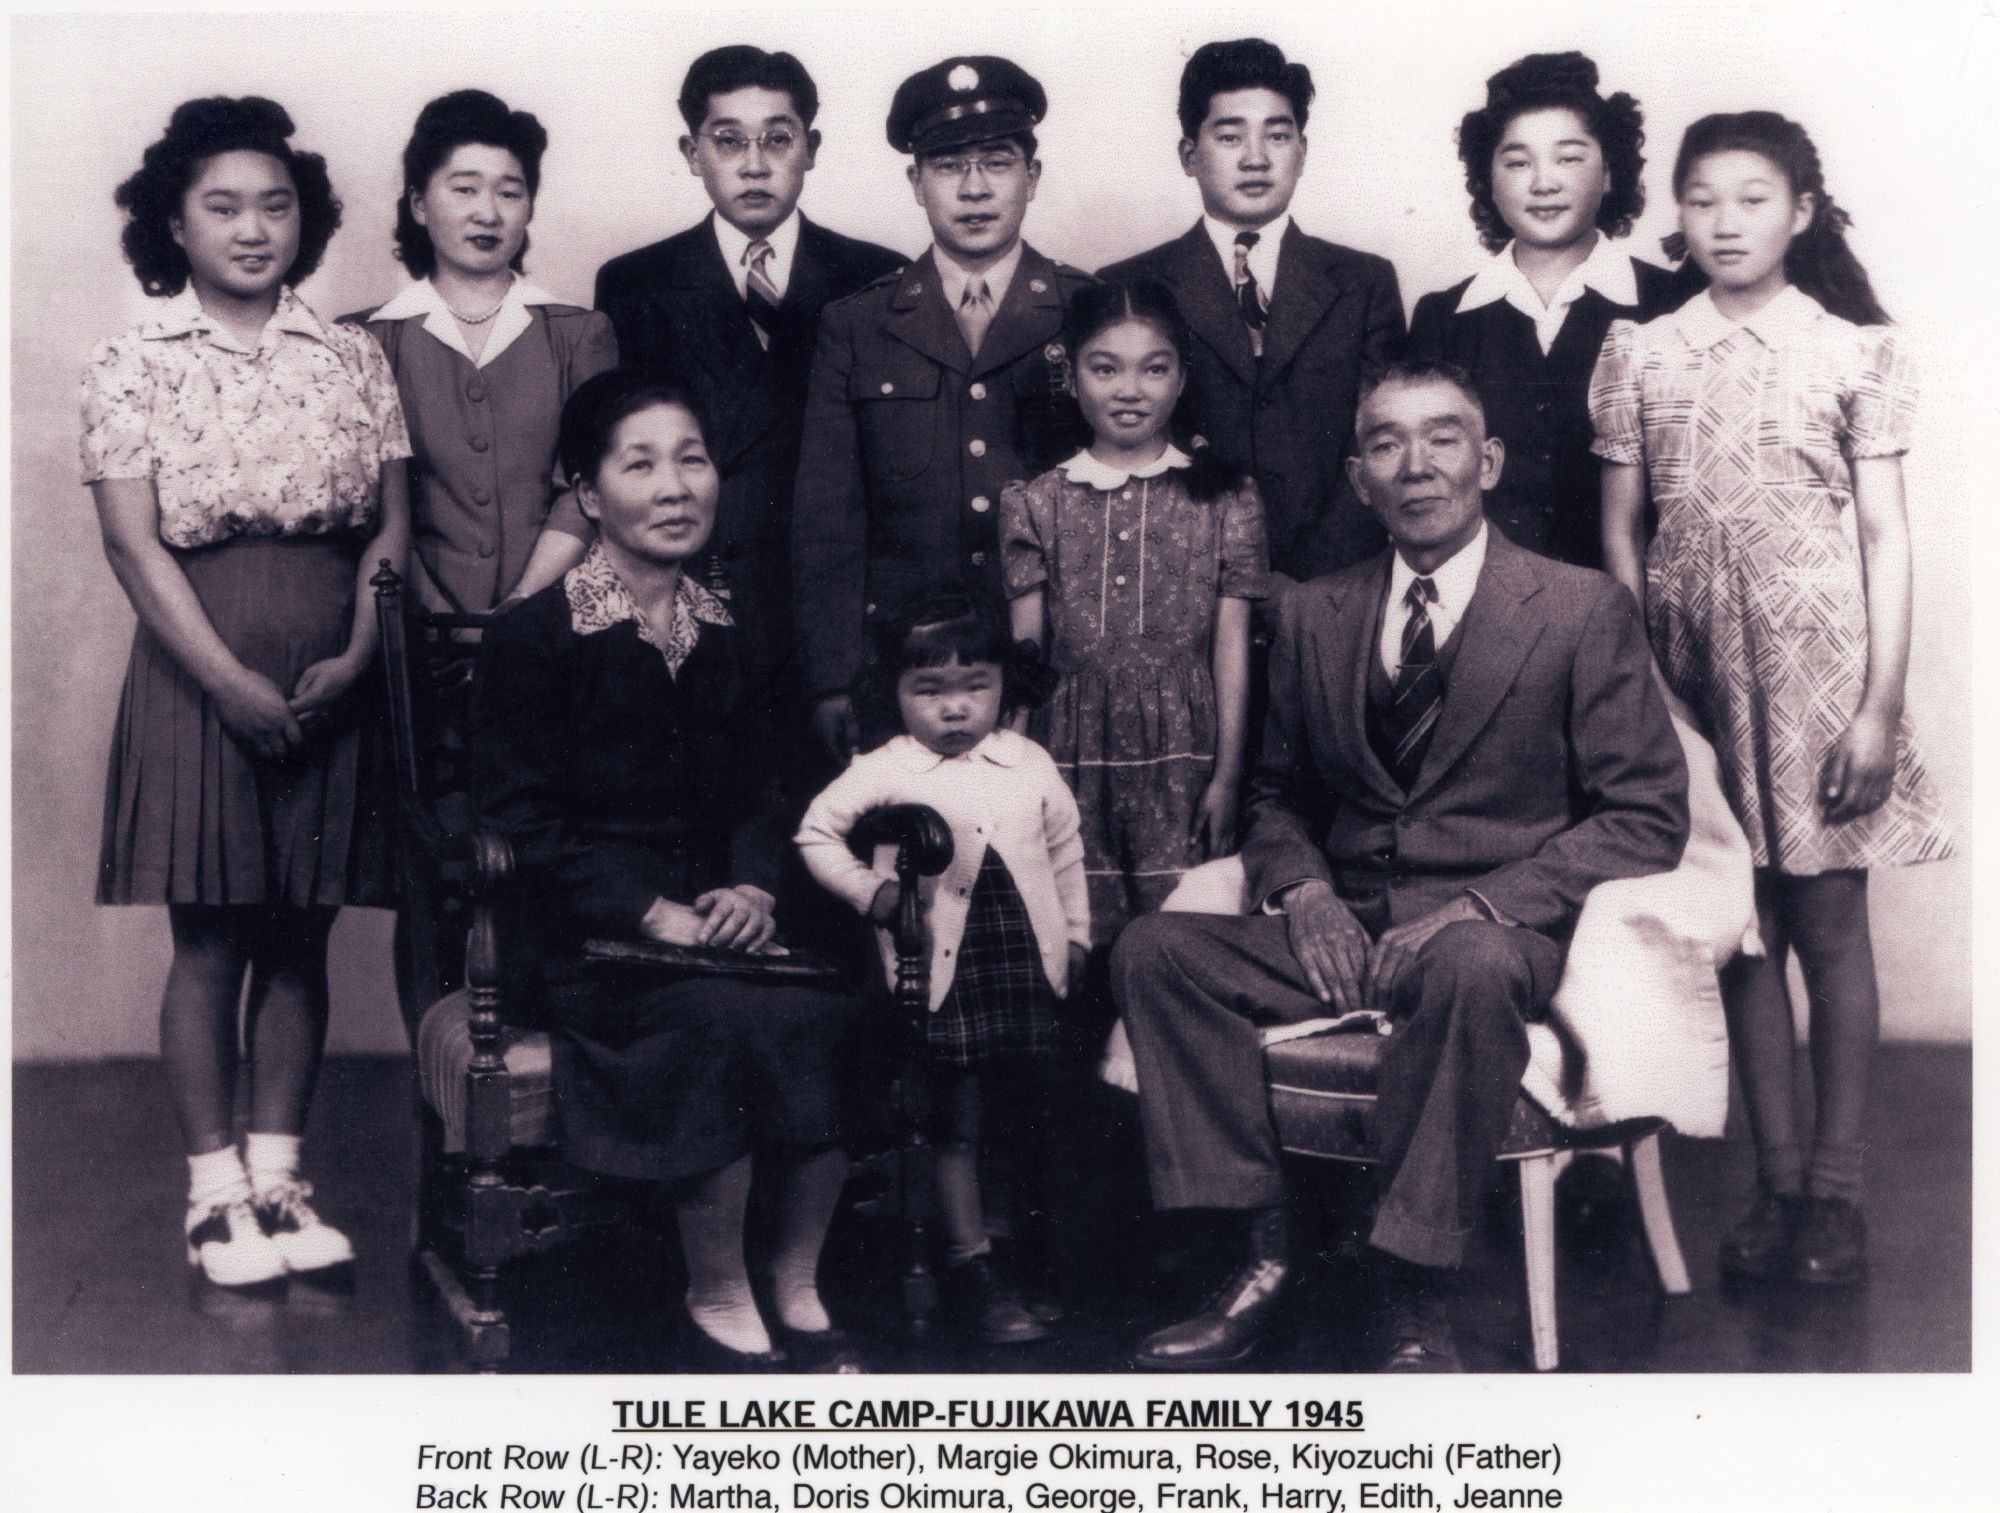 Fujikawa family portrait, taken at Tule Lake camp